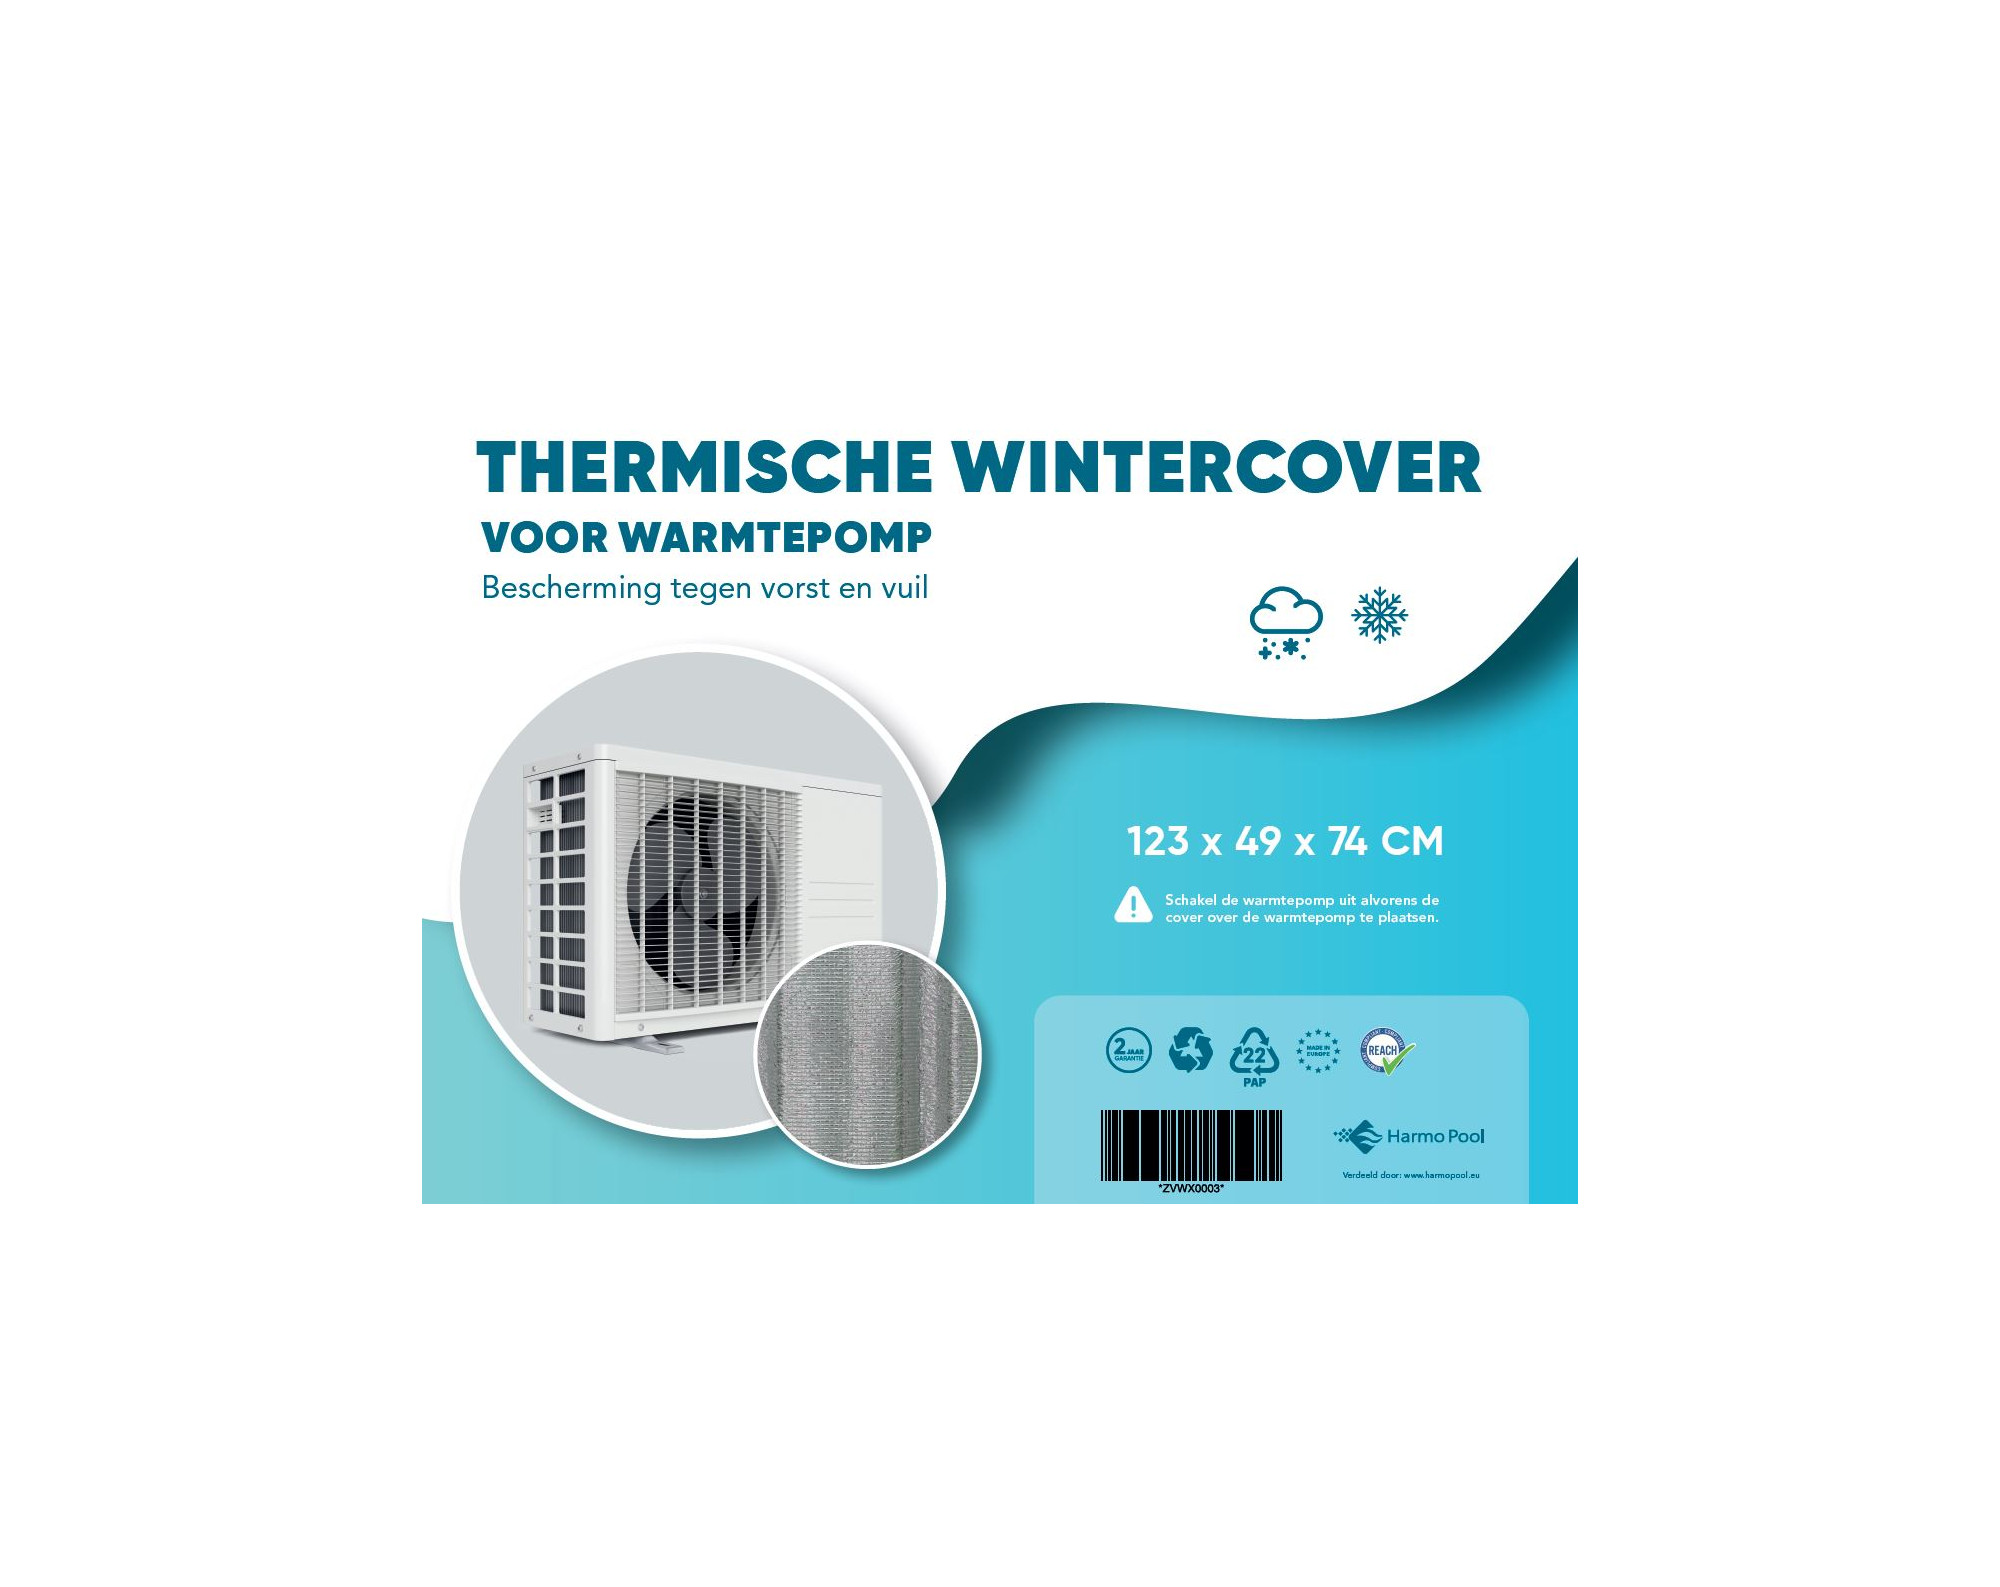 Thermische wintercover voor warmtepomp